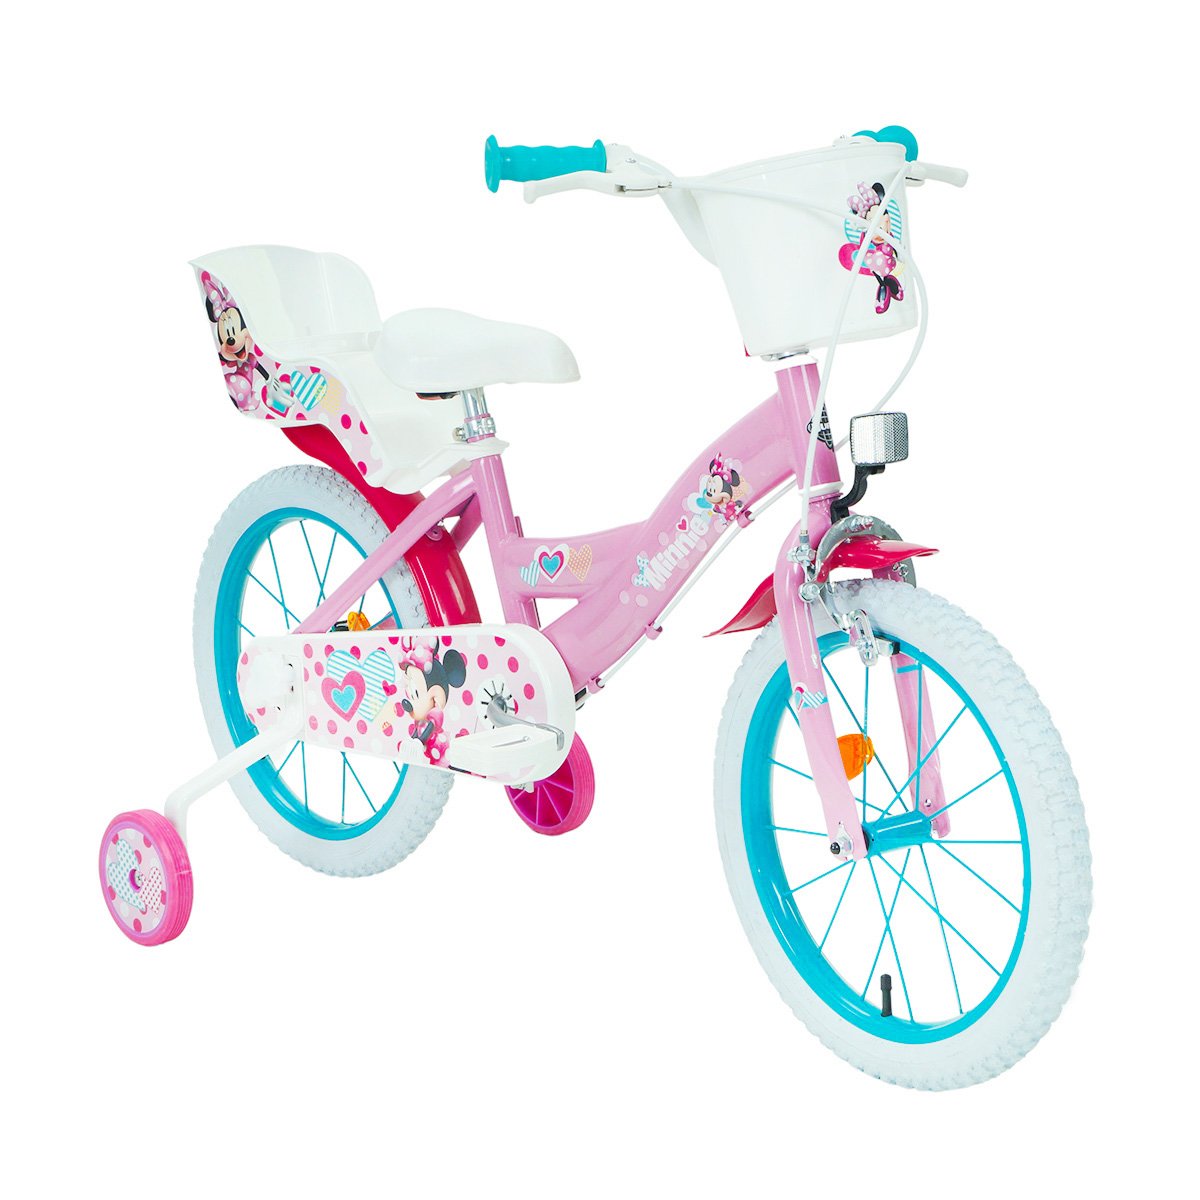 Poze Bicicleta copii, Huffy, Disney Minnie, 16 inch